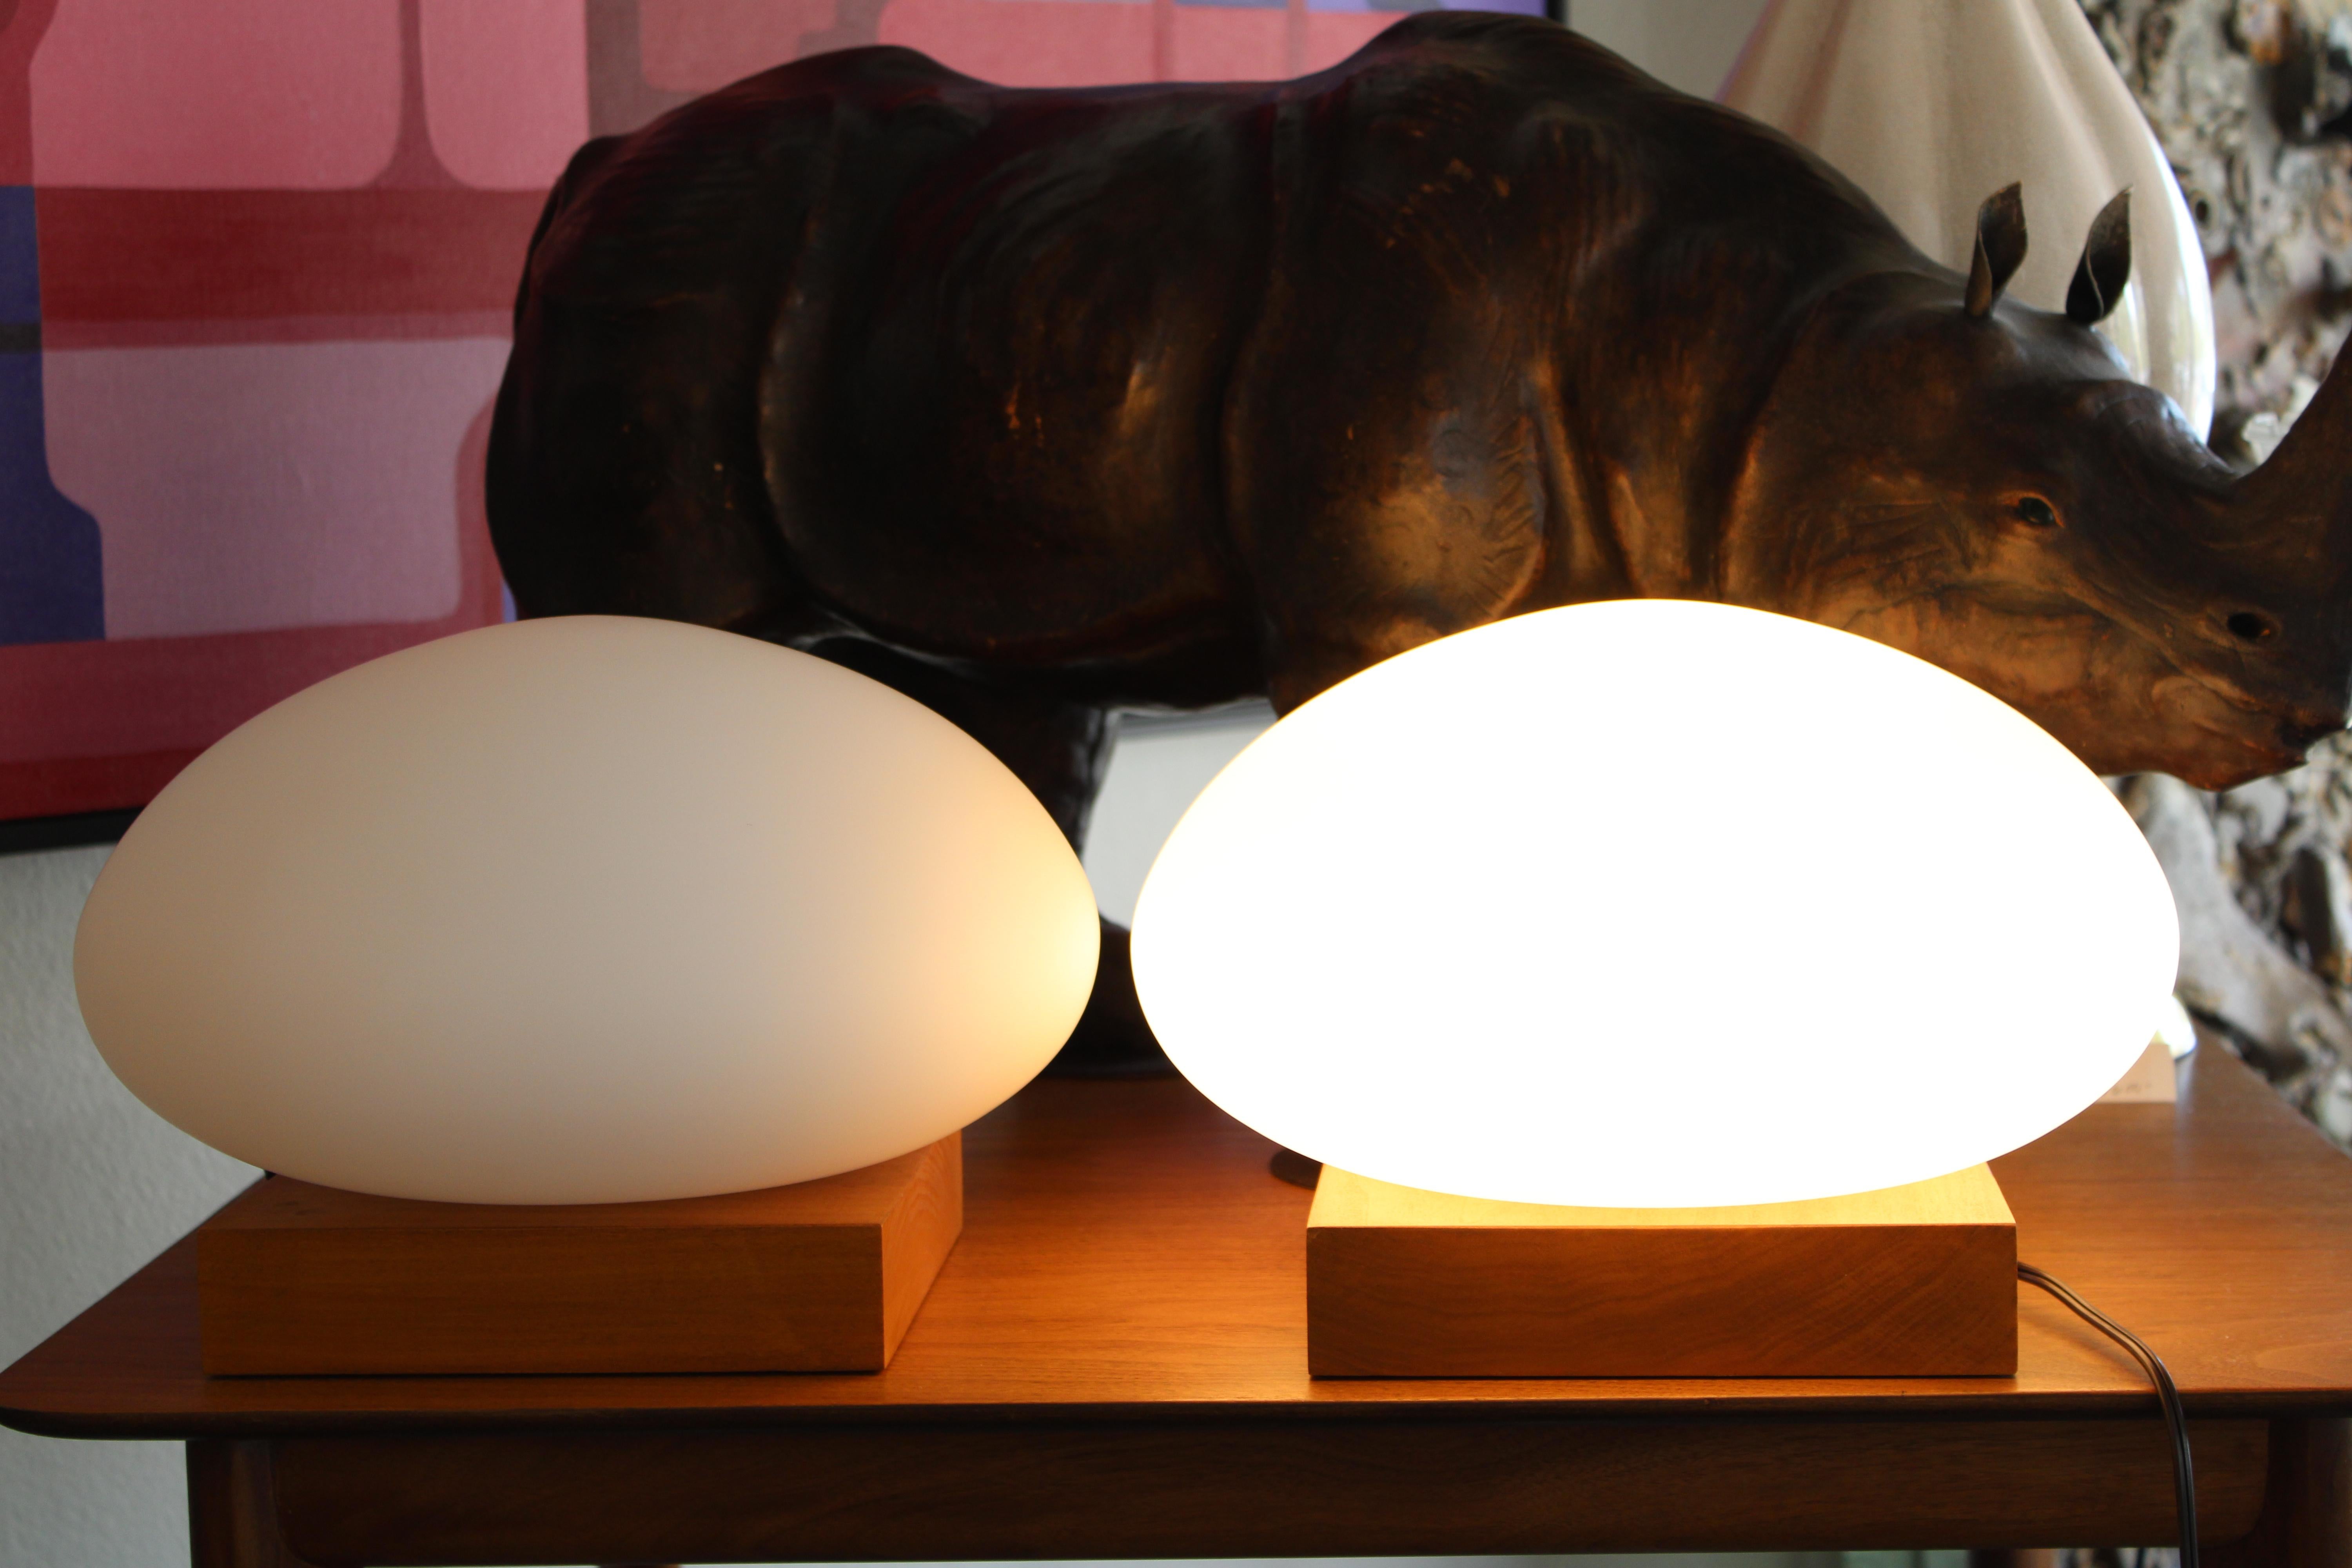 Paire de lampes de table en forme de champignon dans le style des lampes produites par The Table Company, Newark, NJ.  Les bases en noyer ont une largeur de 8